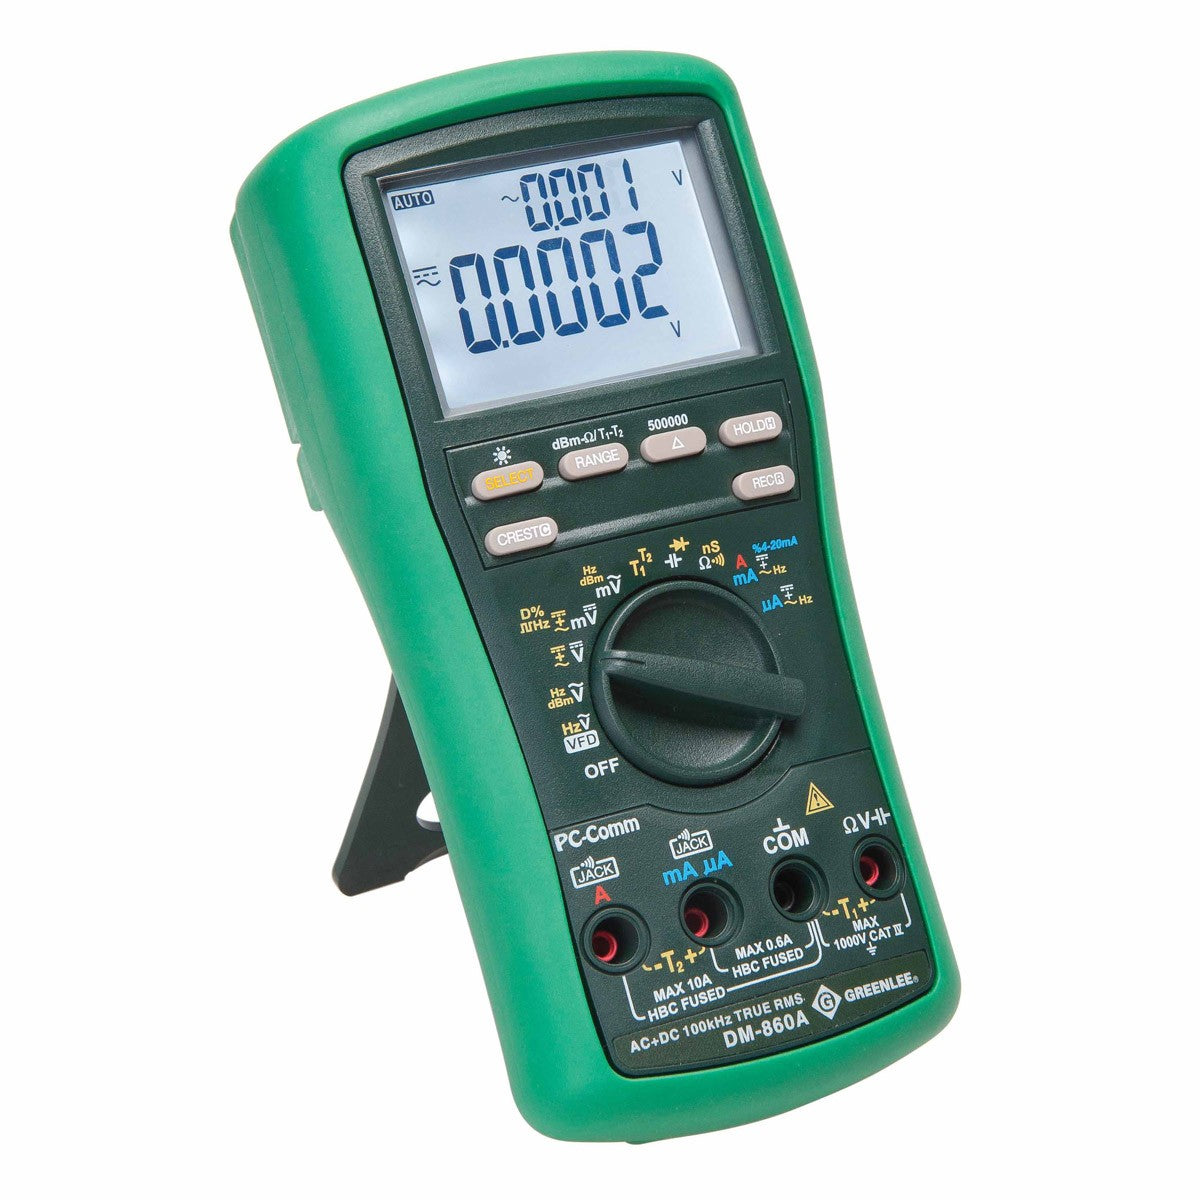 Greenlee DM-860A Industrial Digital Multimeter